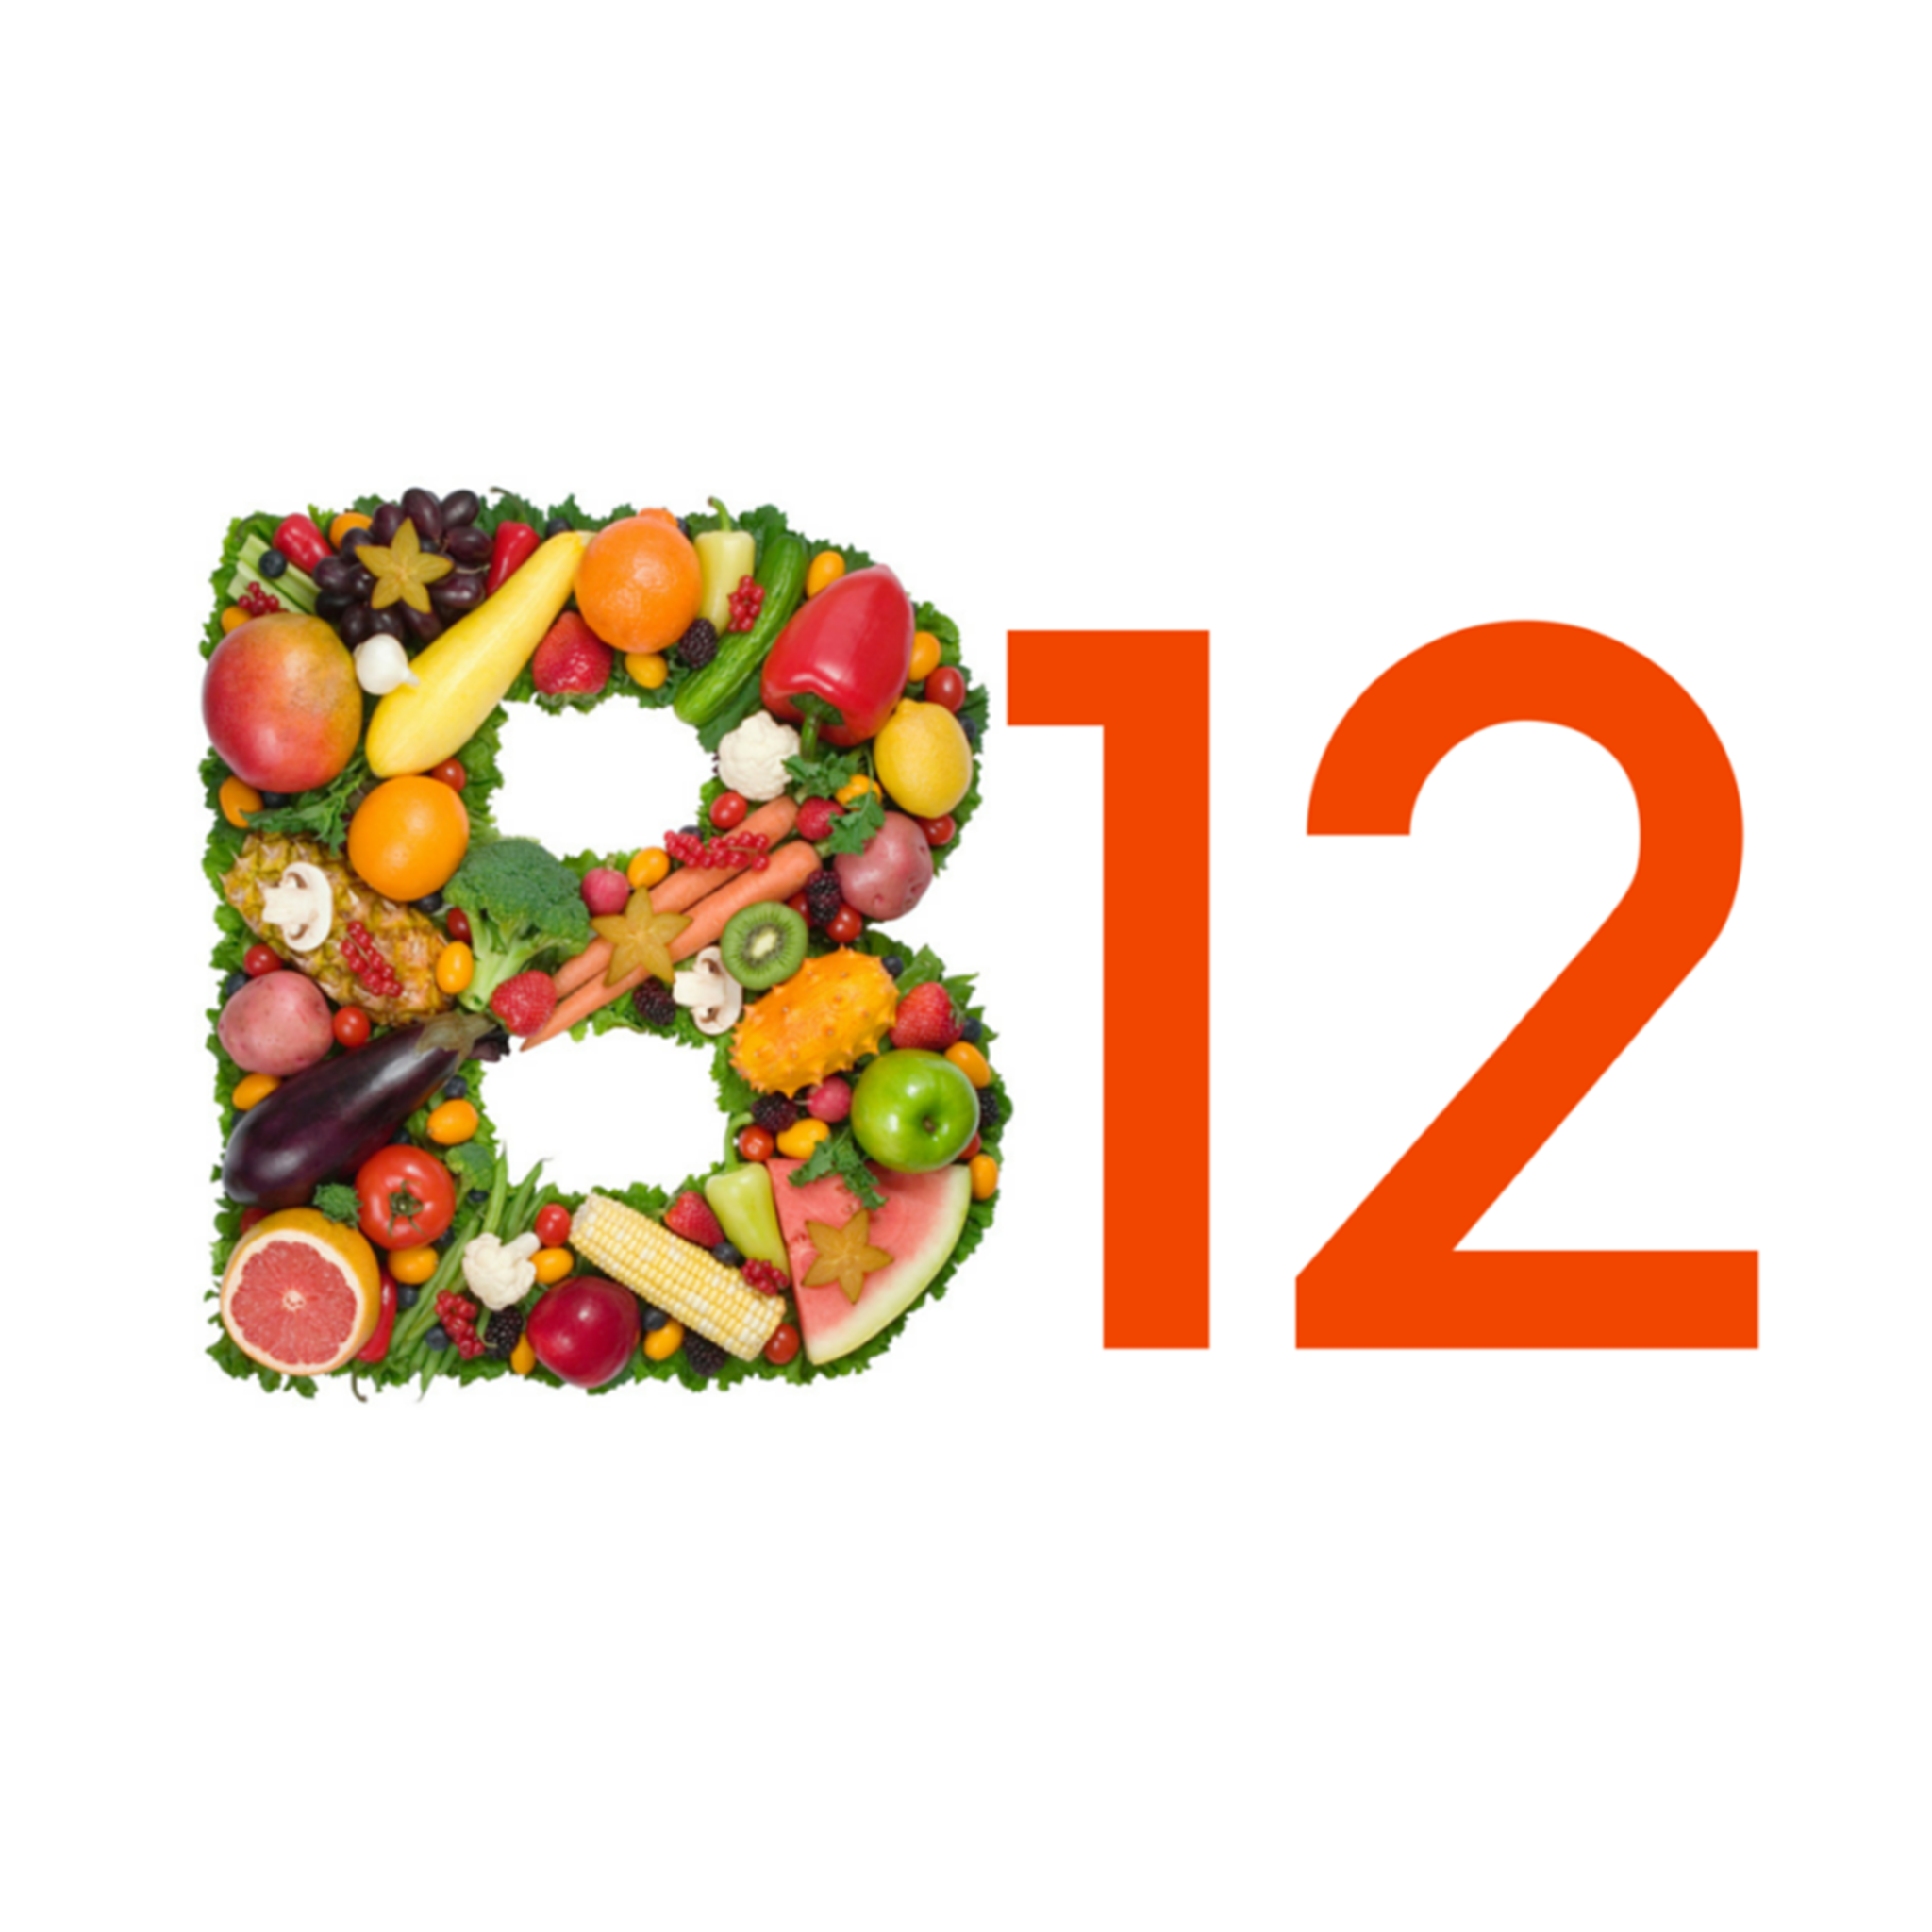 Vitamine B12 tekort? Bloedwaardentest